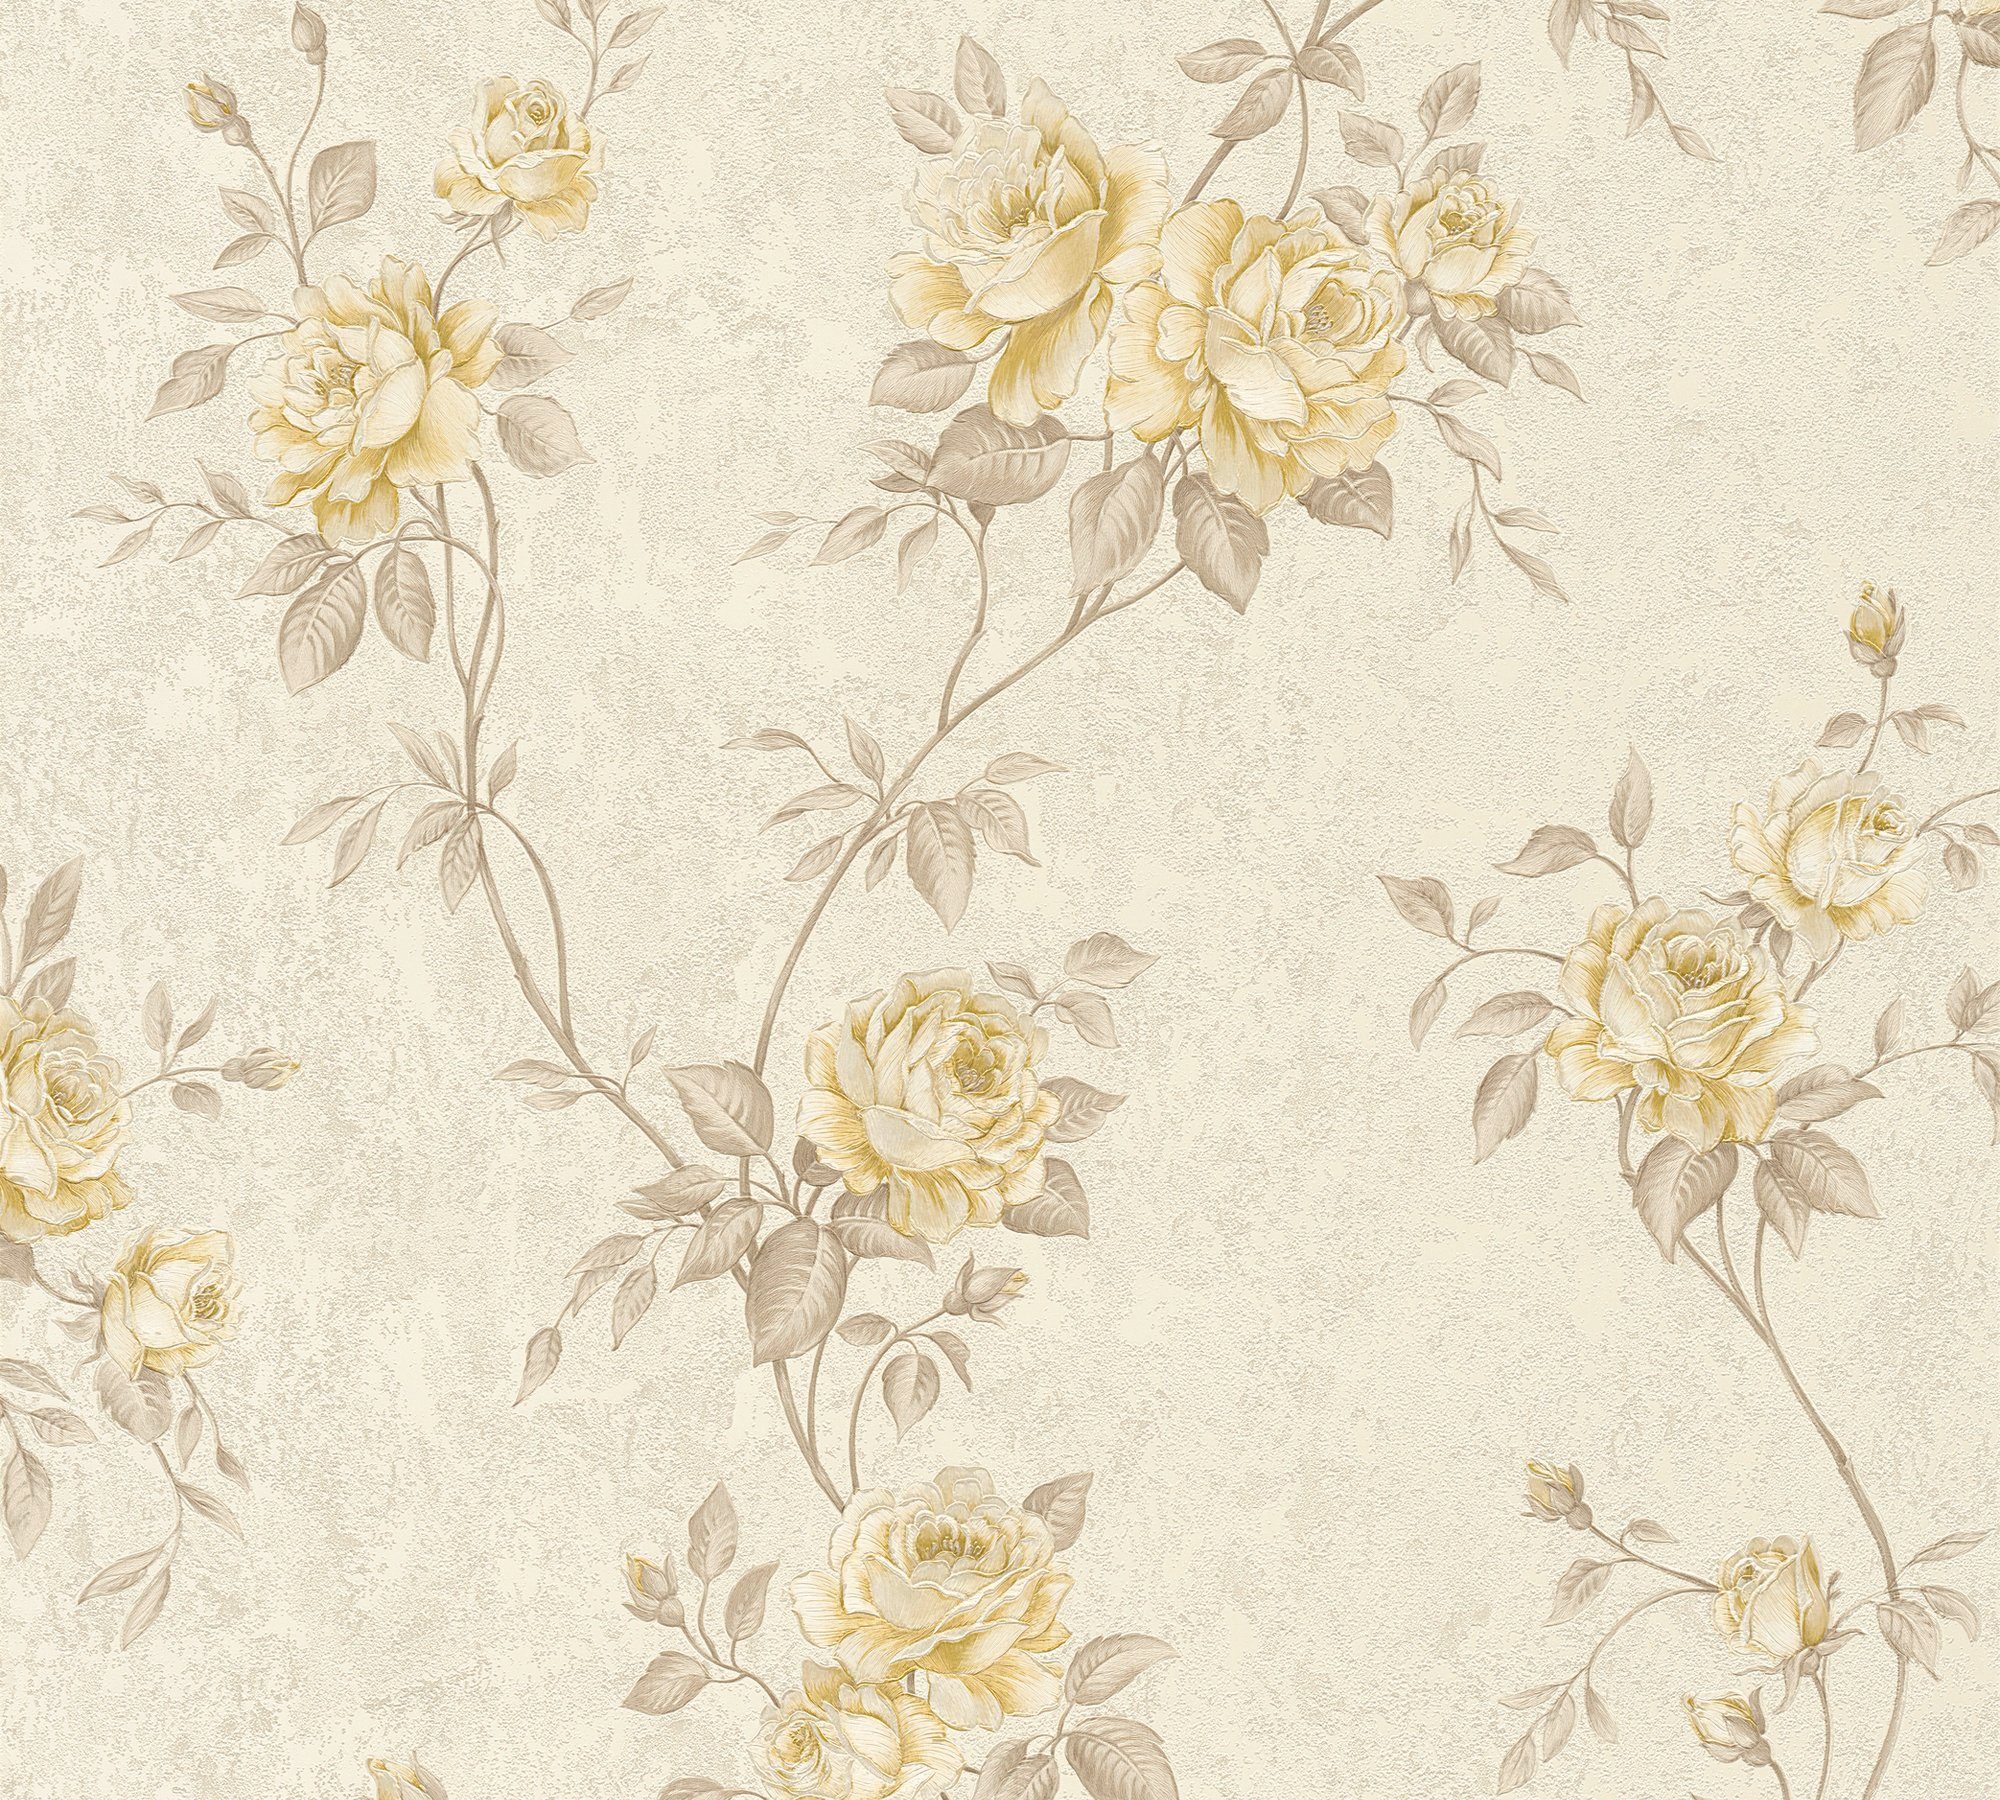 A.S. Création Vliestapete Romantico romantisch creme/beige Tapete Barock floral, Blumen floral